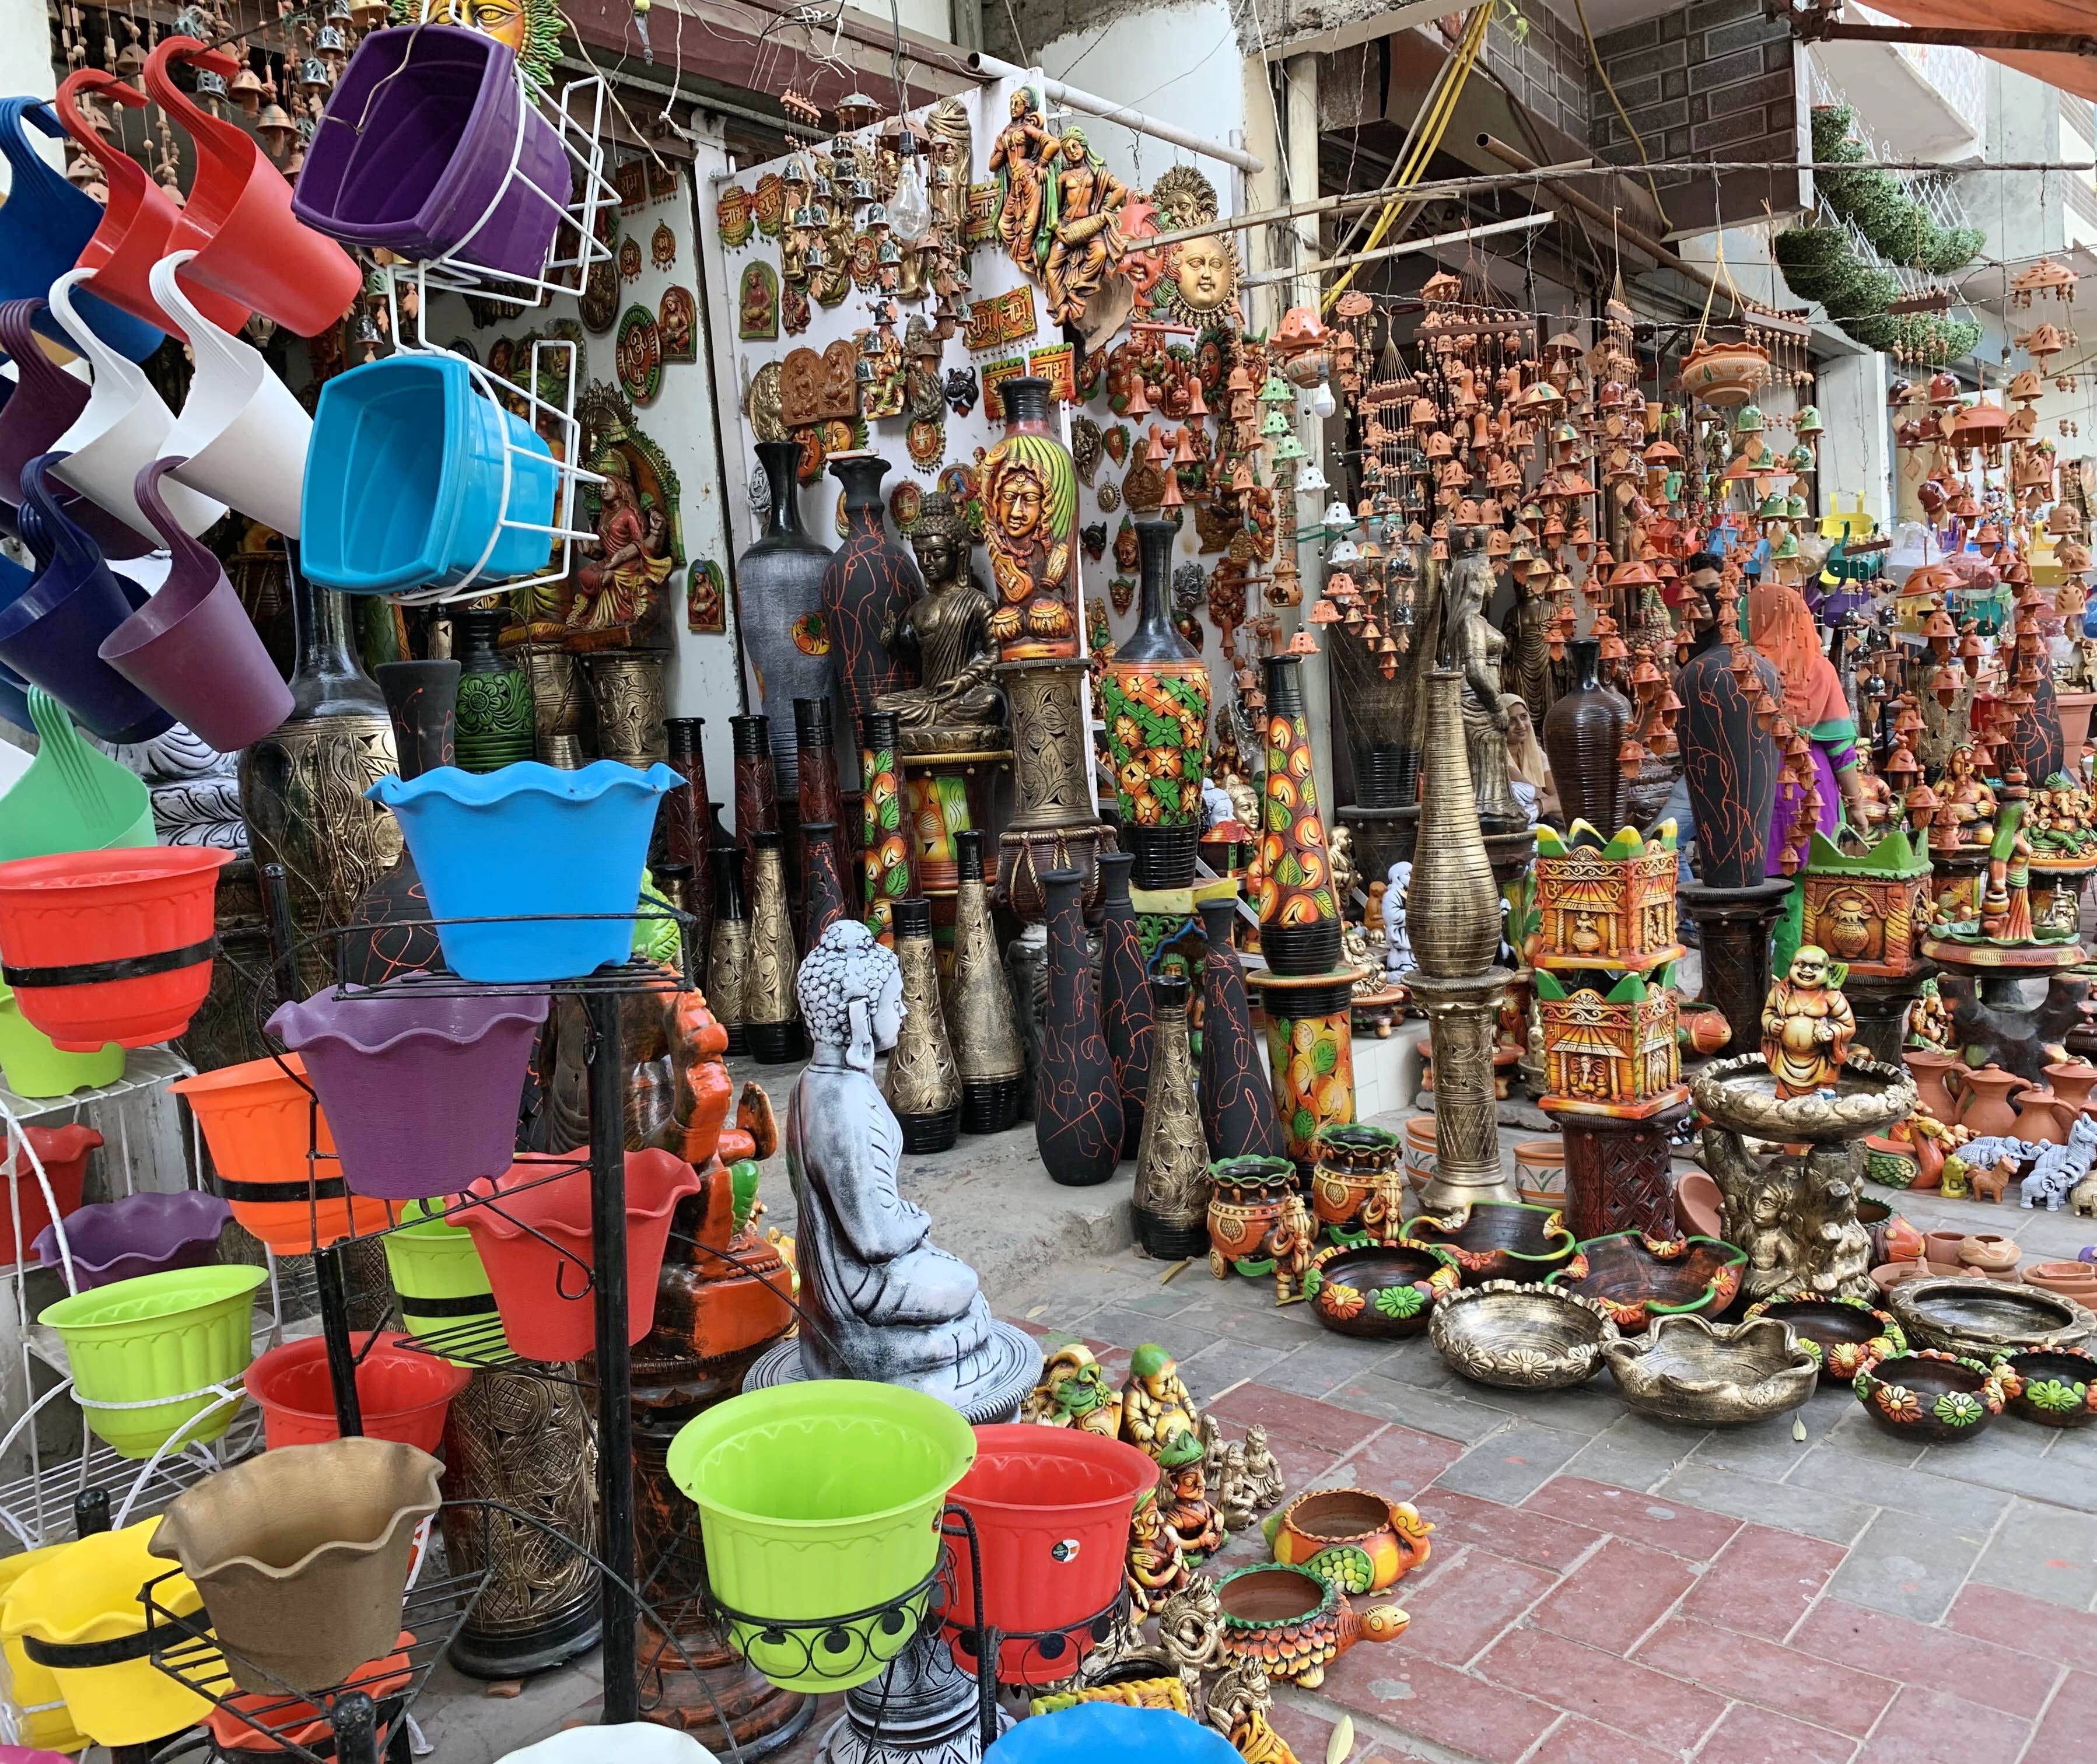 Bazaar,Selling,Market,Marketplace,Public space,Human settlement,Flea market,City,Building,Souvenir